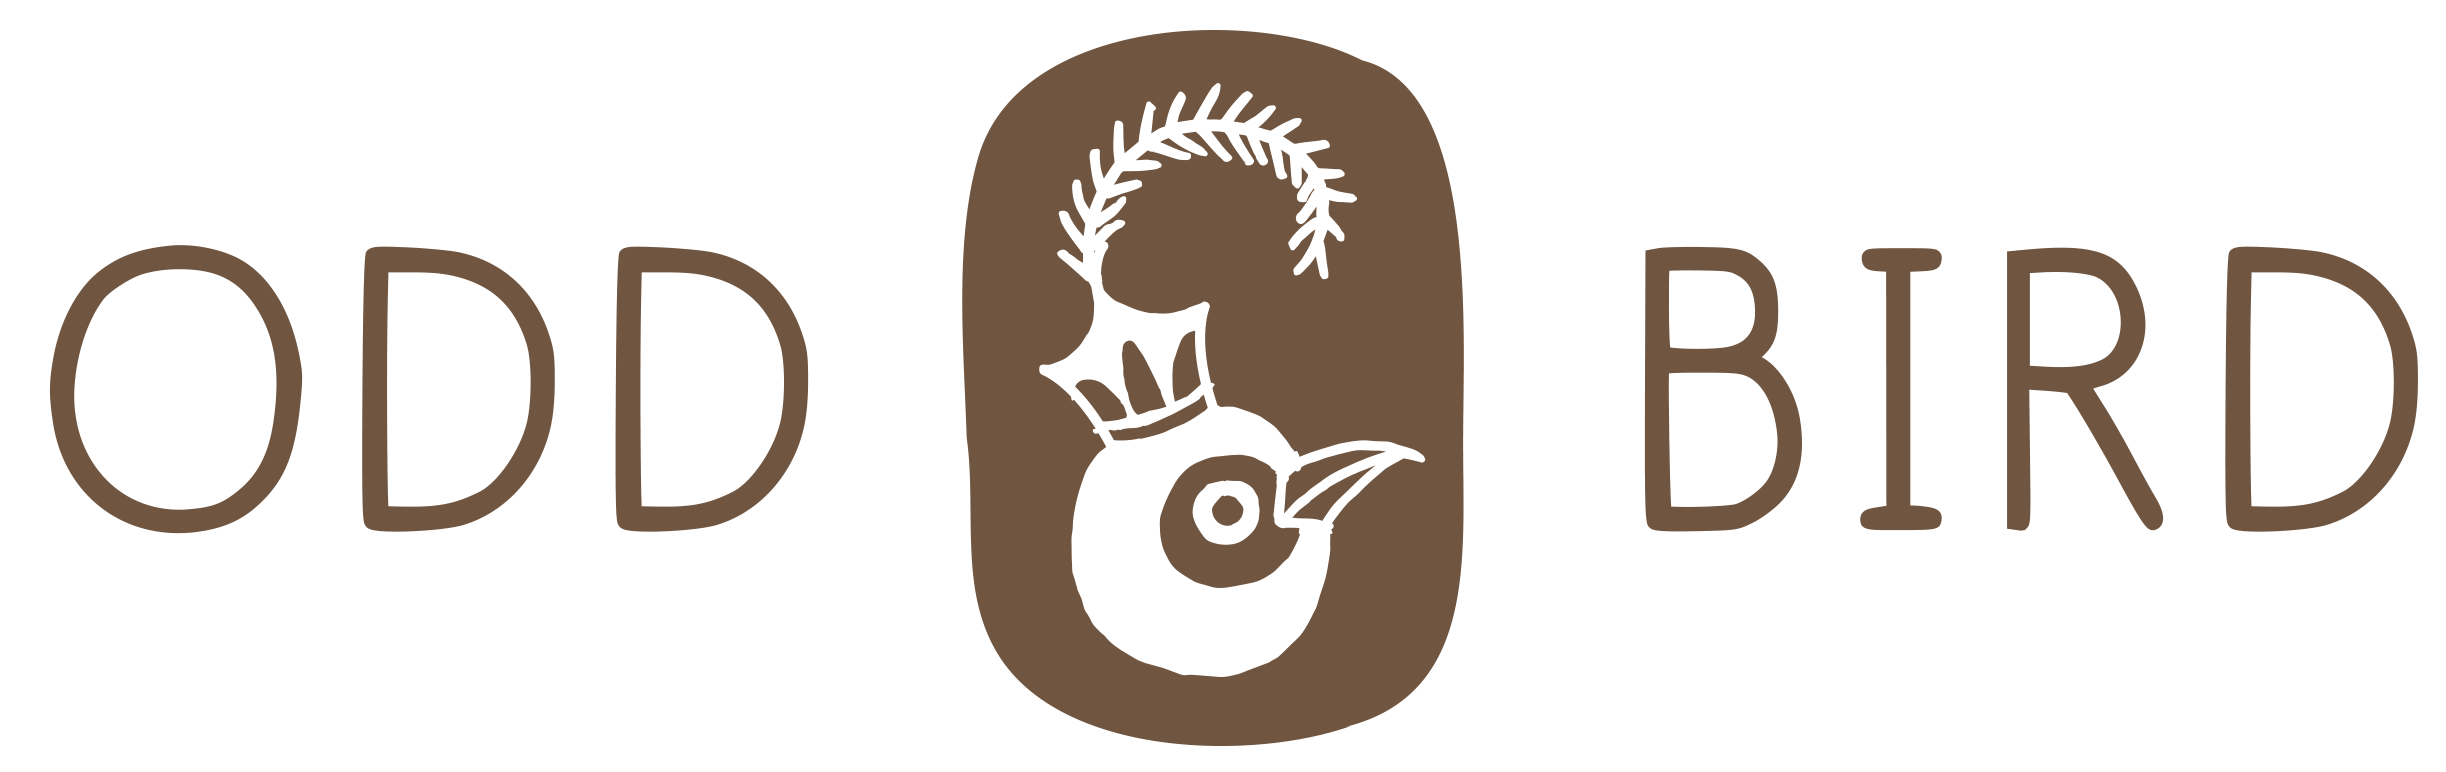 Oddbird Co. logo